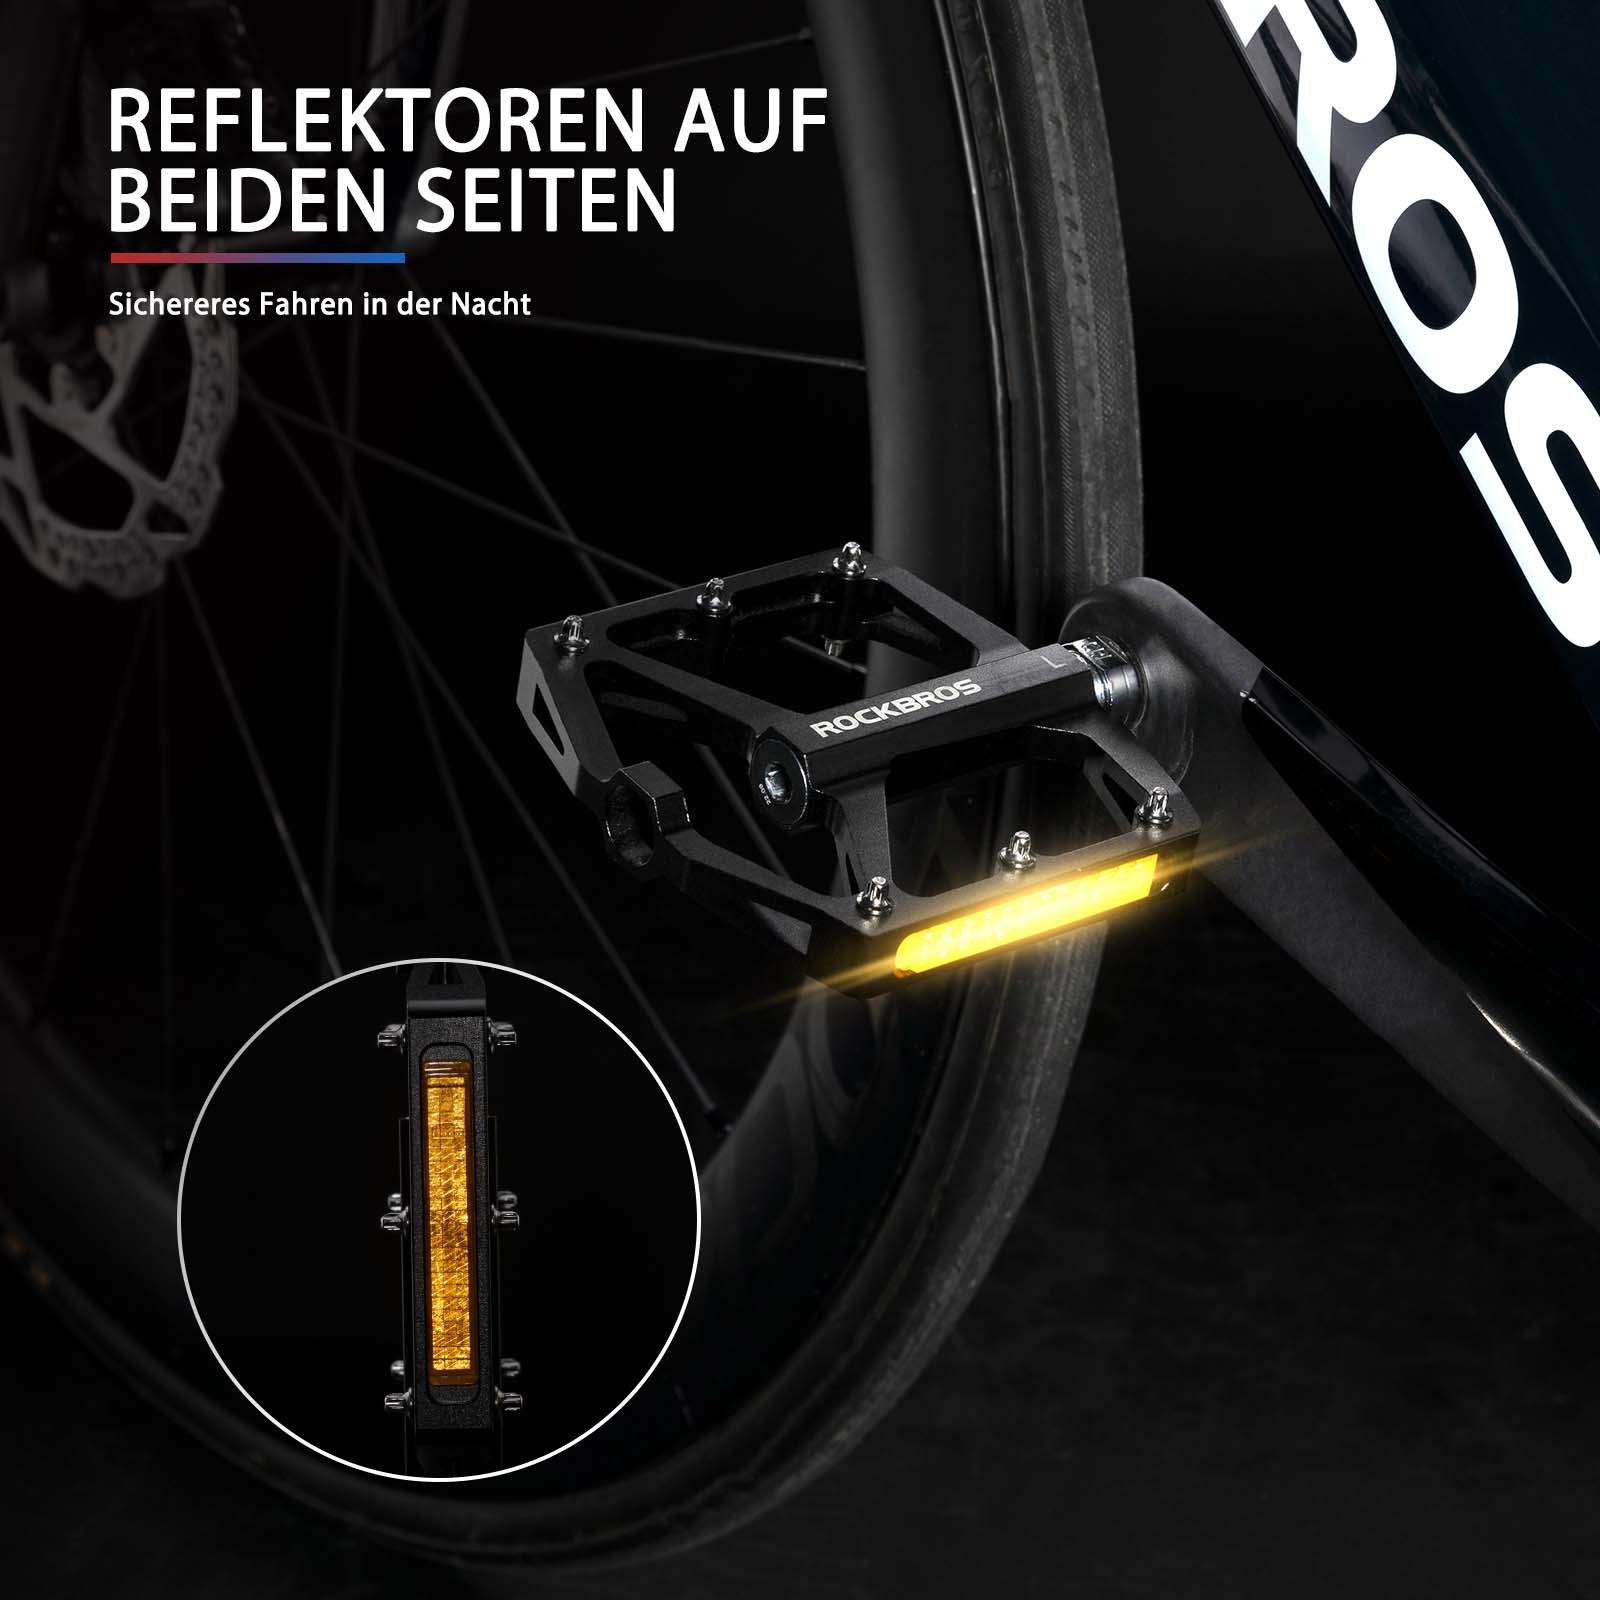 ROCKBROS Fahrradpedale mit Reflektoren aus Aluminiumlegierung 9/16 Zoll